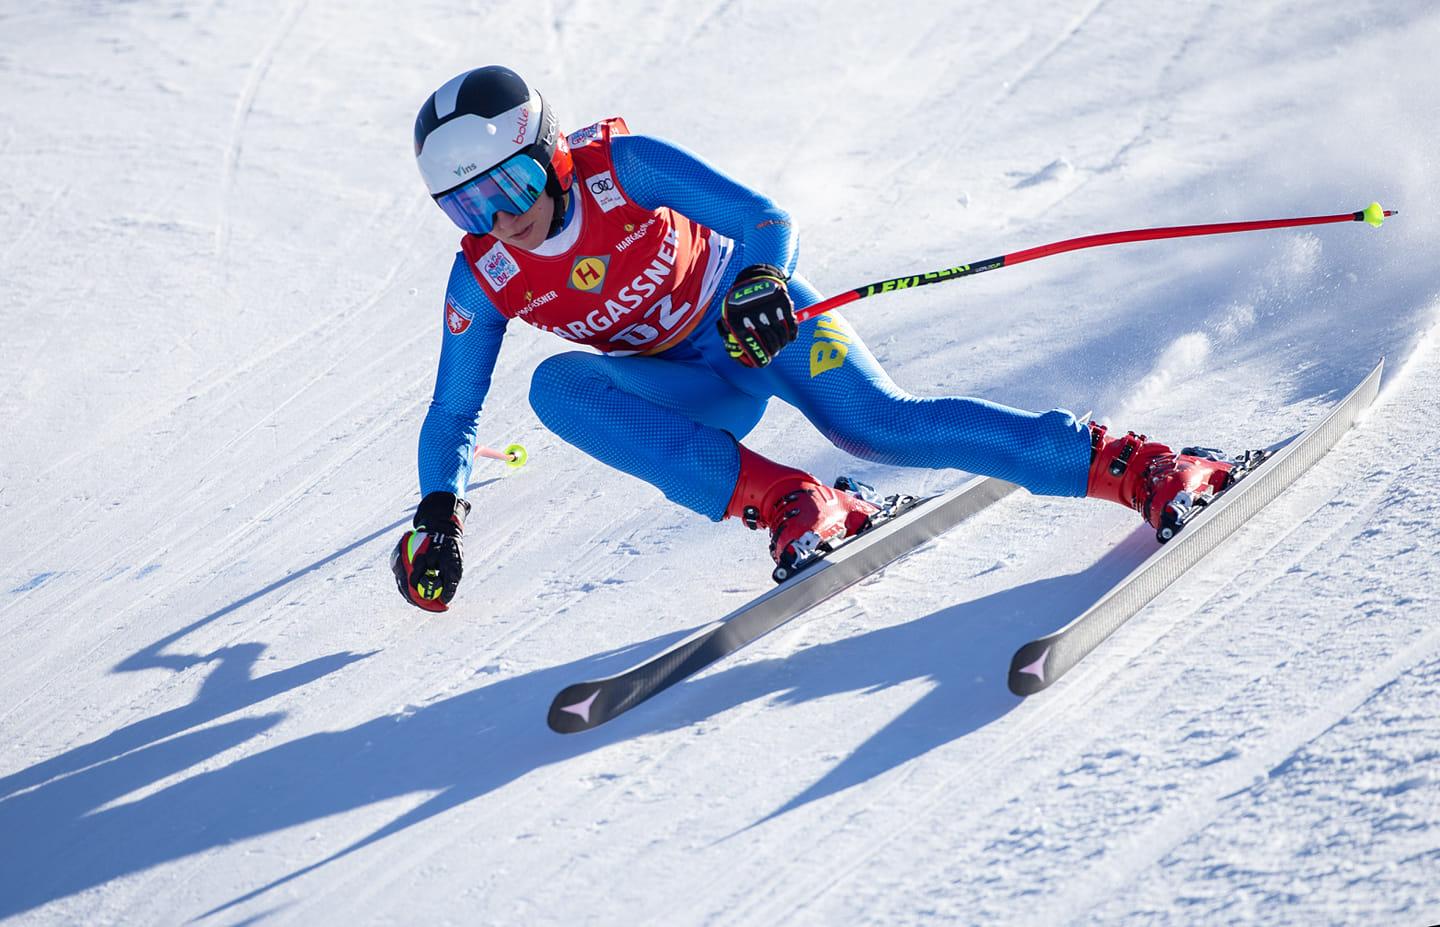 Muzaferija: Najbolji rezultat u historiji bh. skijanja - Avaz